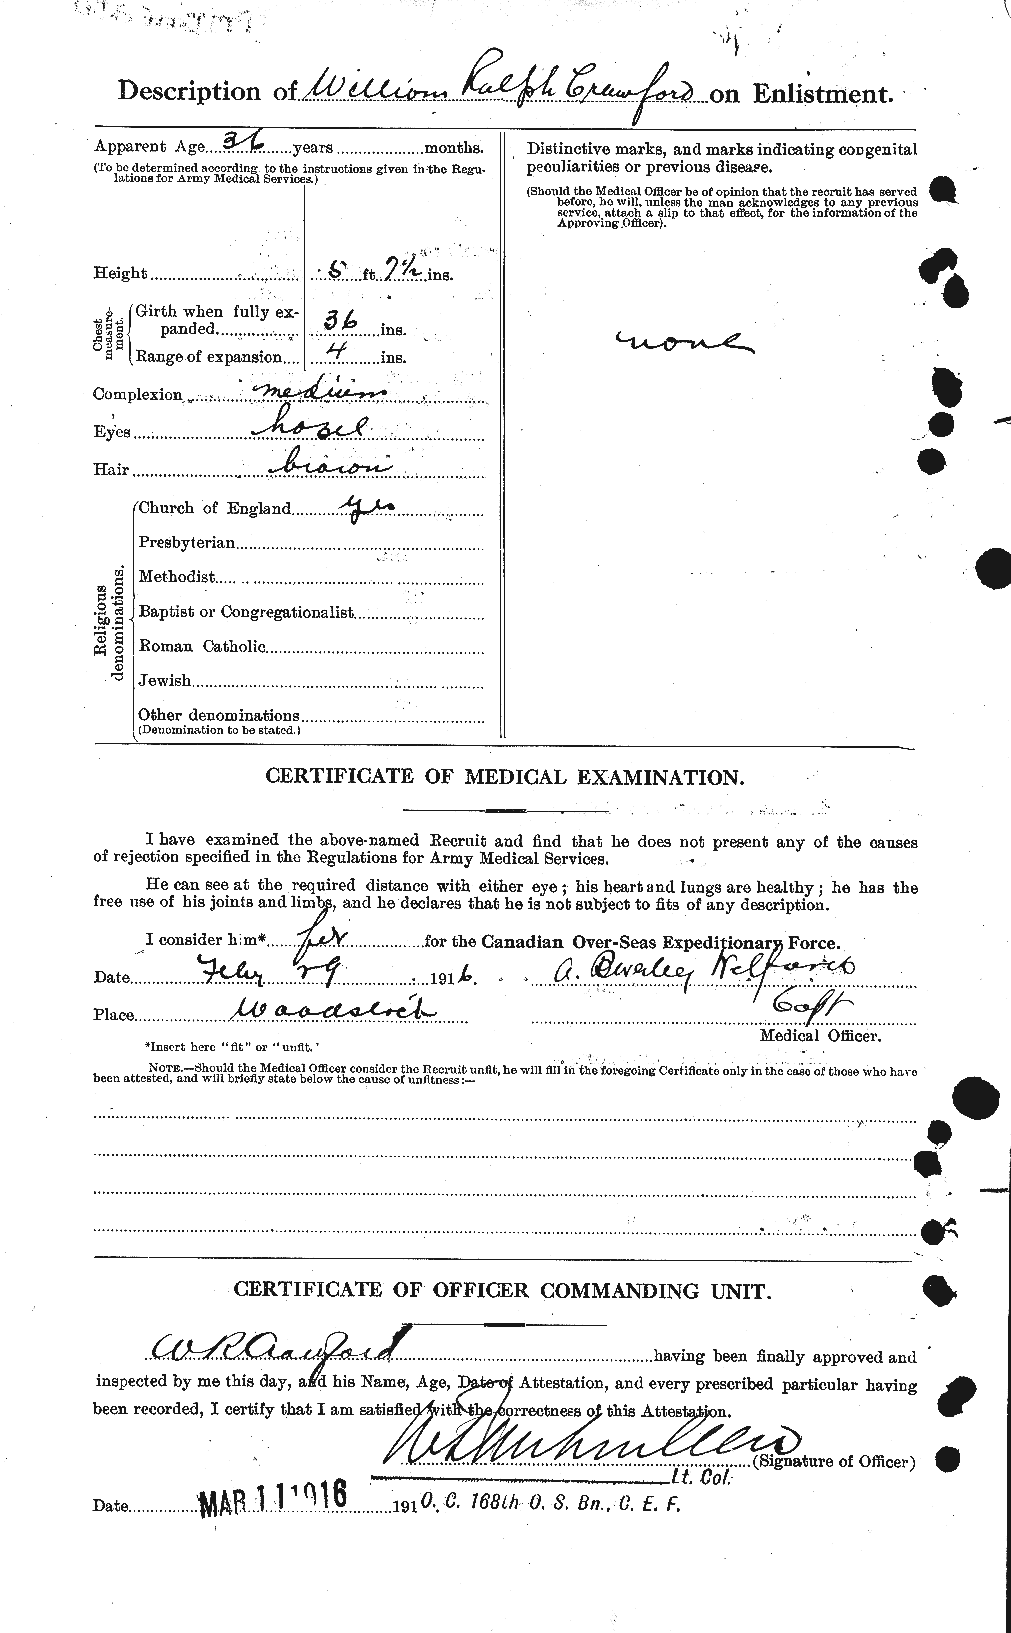 Dossiers du Personnel de la Première Guerre mondiale - CEC 060687b